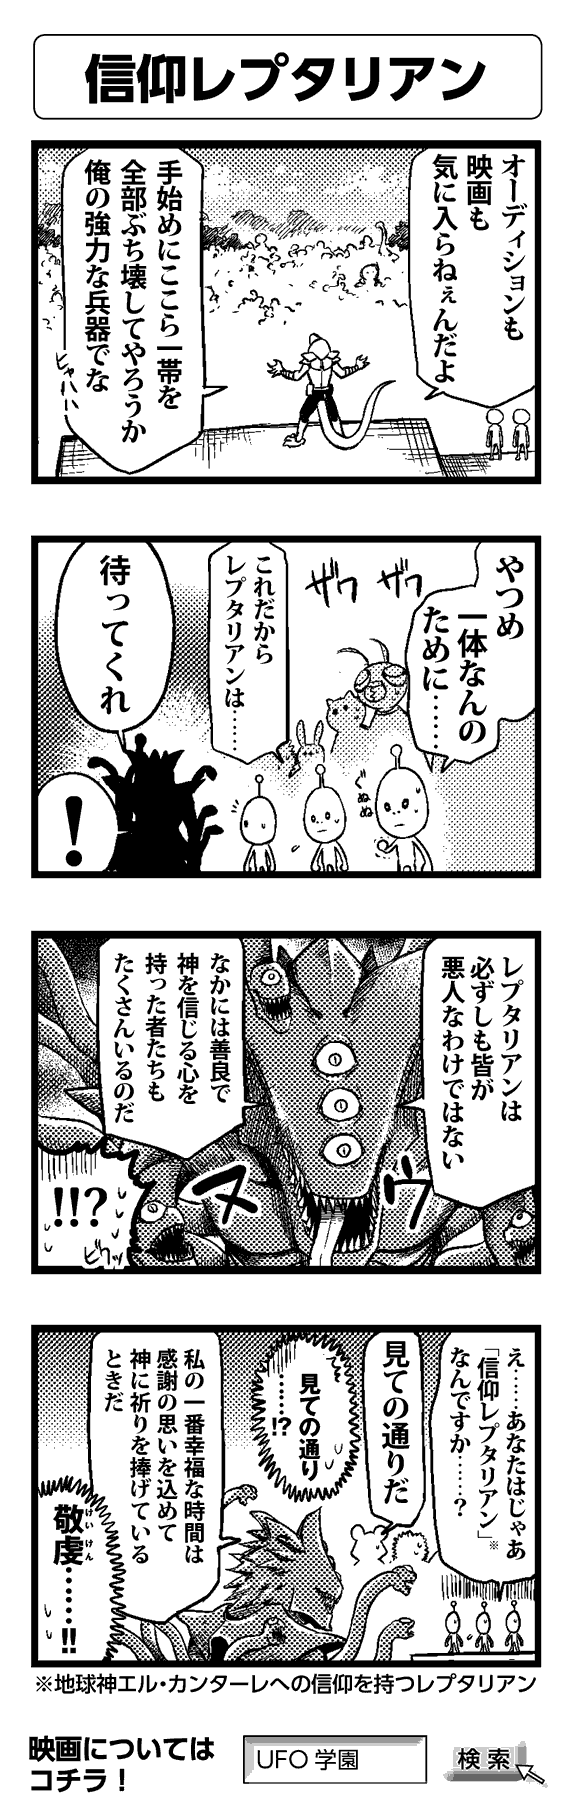 信仰レプタリアン - 四コマ漫画ノンフィクション #018